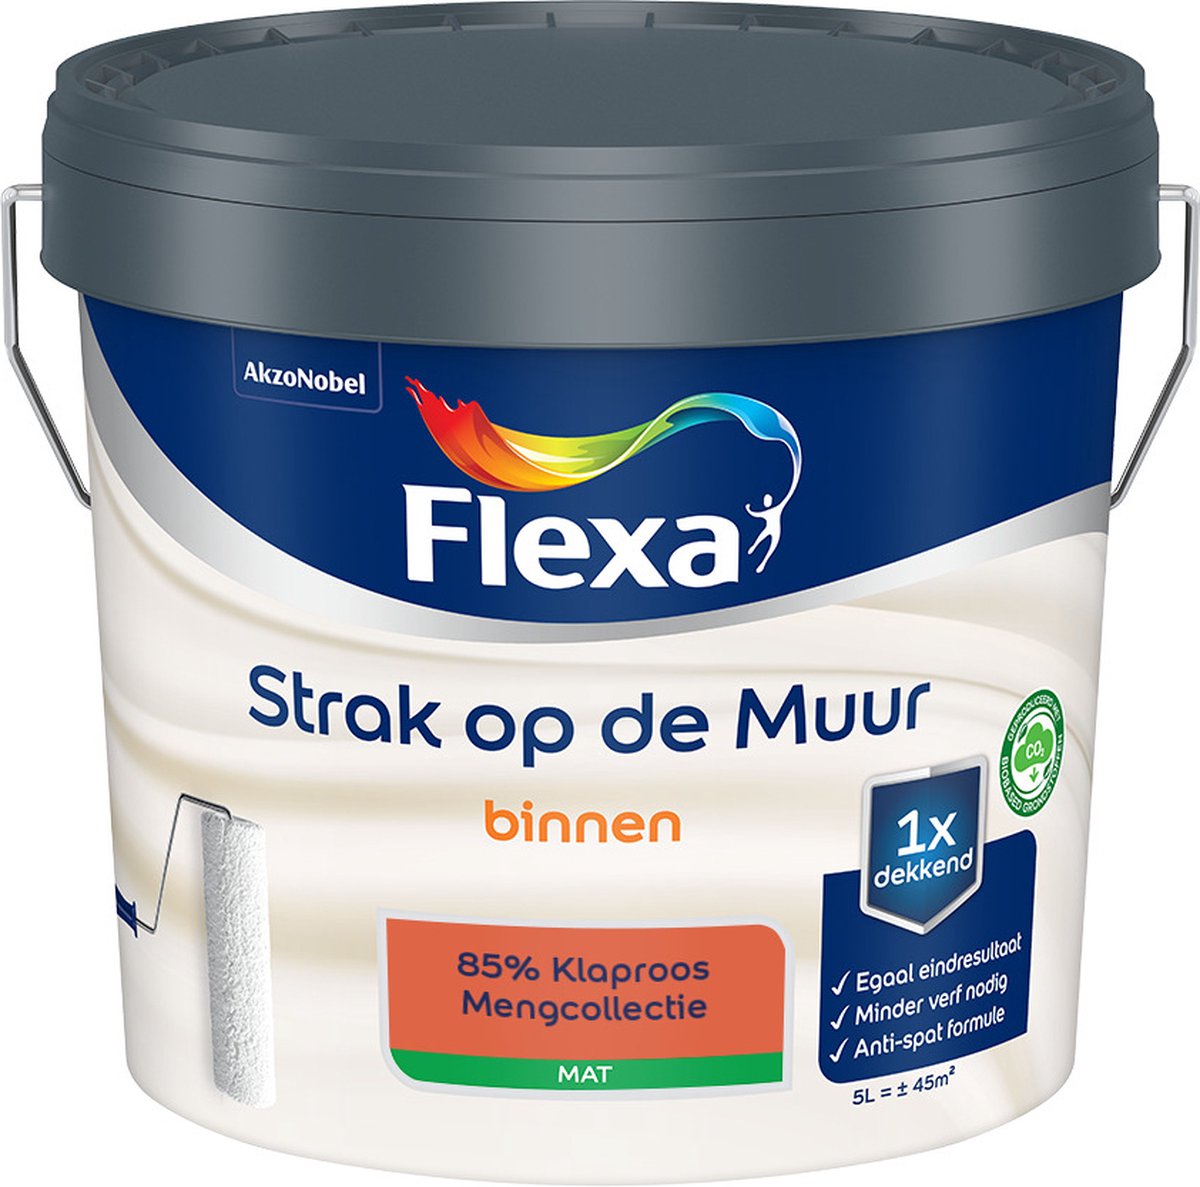 Flexa - Strak op de muur - Muurverf - Mengcollectie - 85% Klaproos - 5 Liter